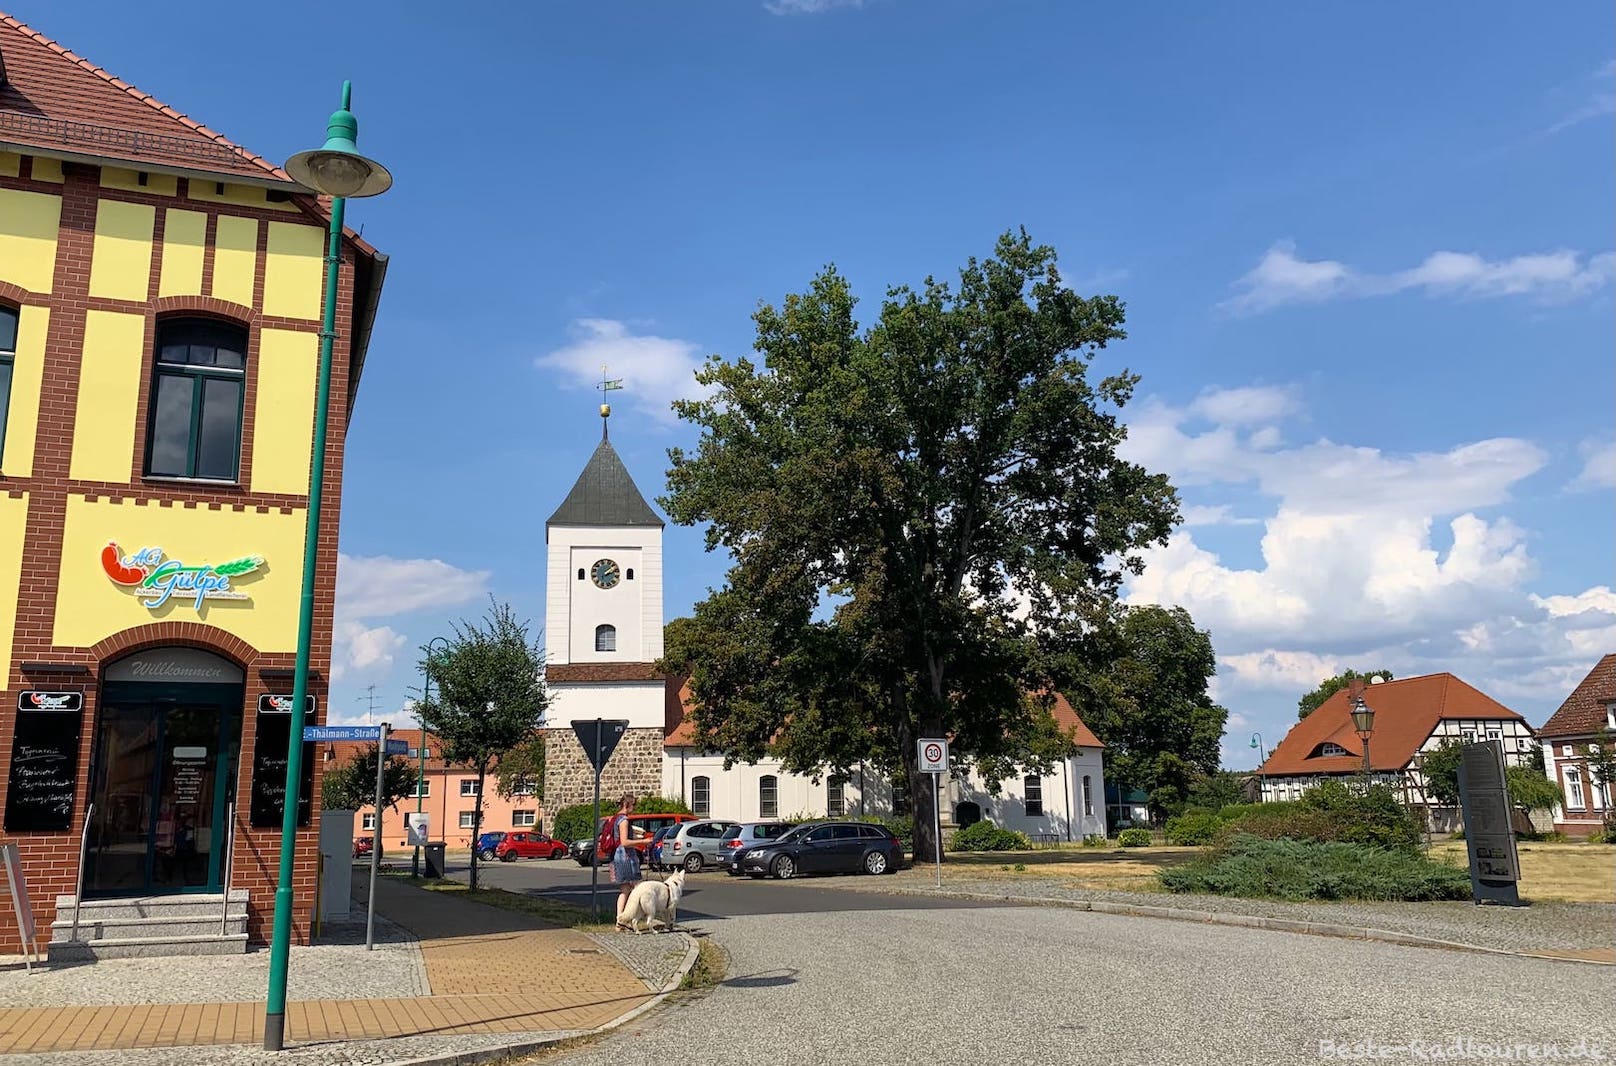 Foto vom Radweg Tour Brandenburg aus: Zentrum von Rhinow, Metzger-Imbiss, Stadtkirche